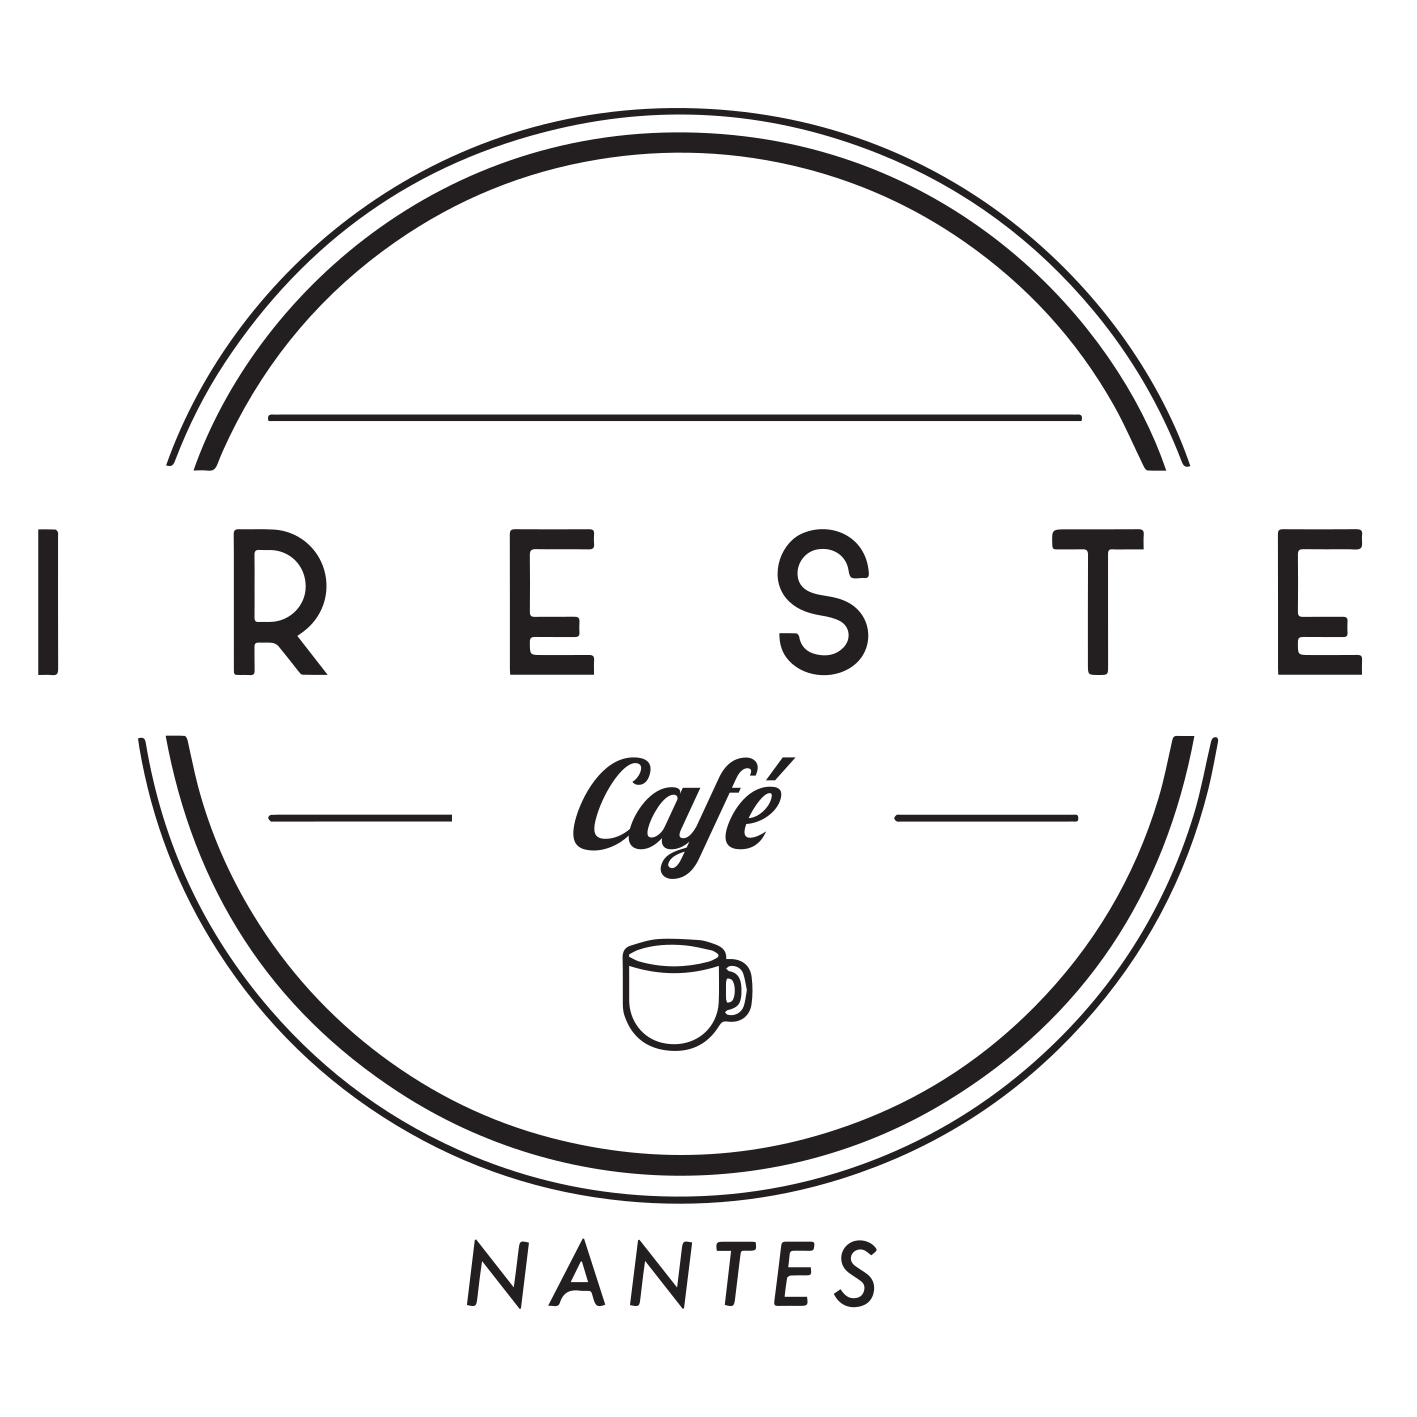 Cafétéria Irest (Cafet IRESTE)